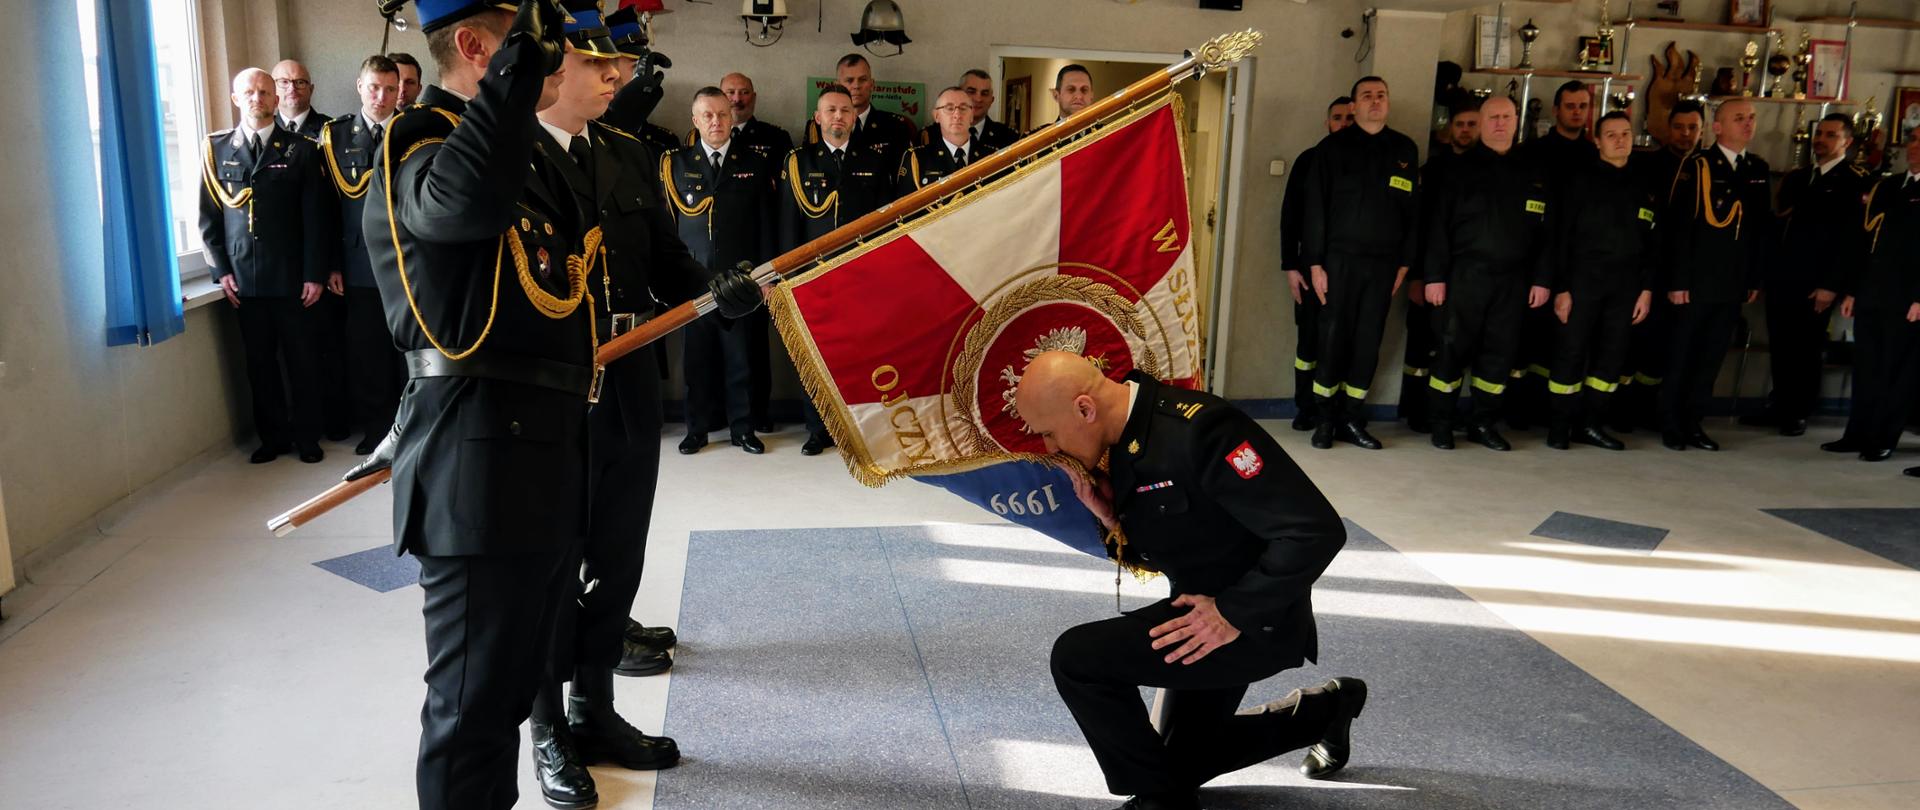 Pożegnanie ze służbą Komendanta Powiatowego Państwowej Straży Pożarnej w Żarach